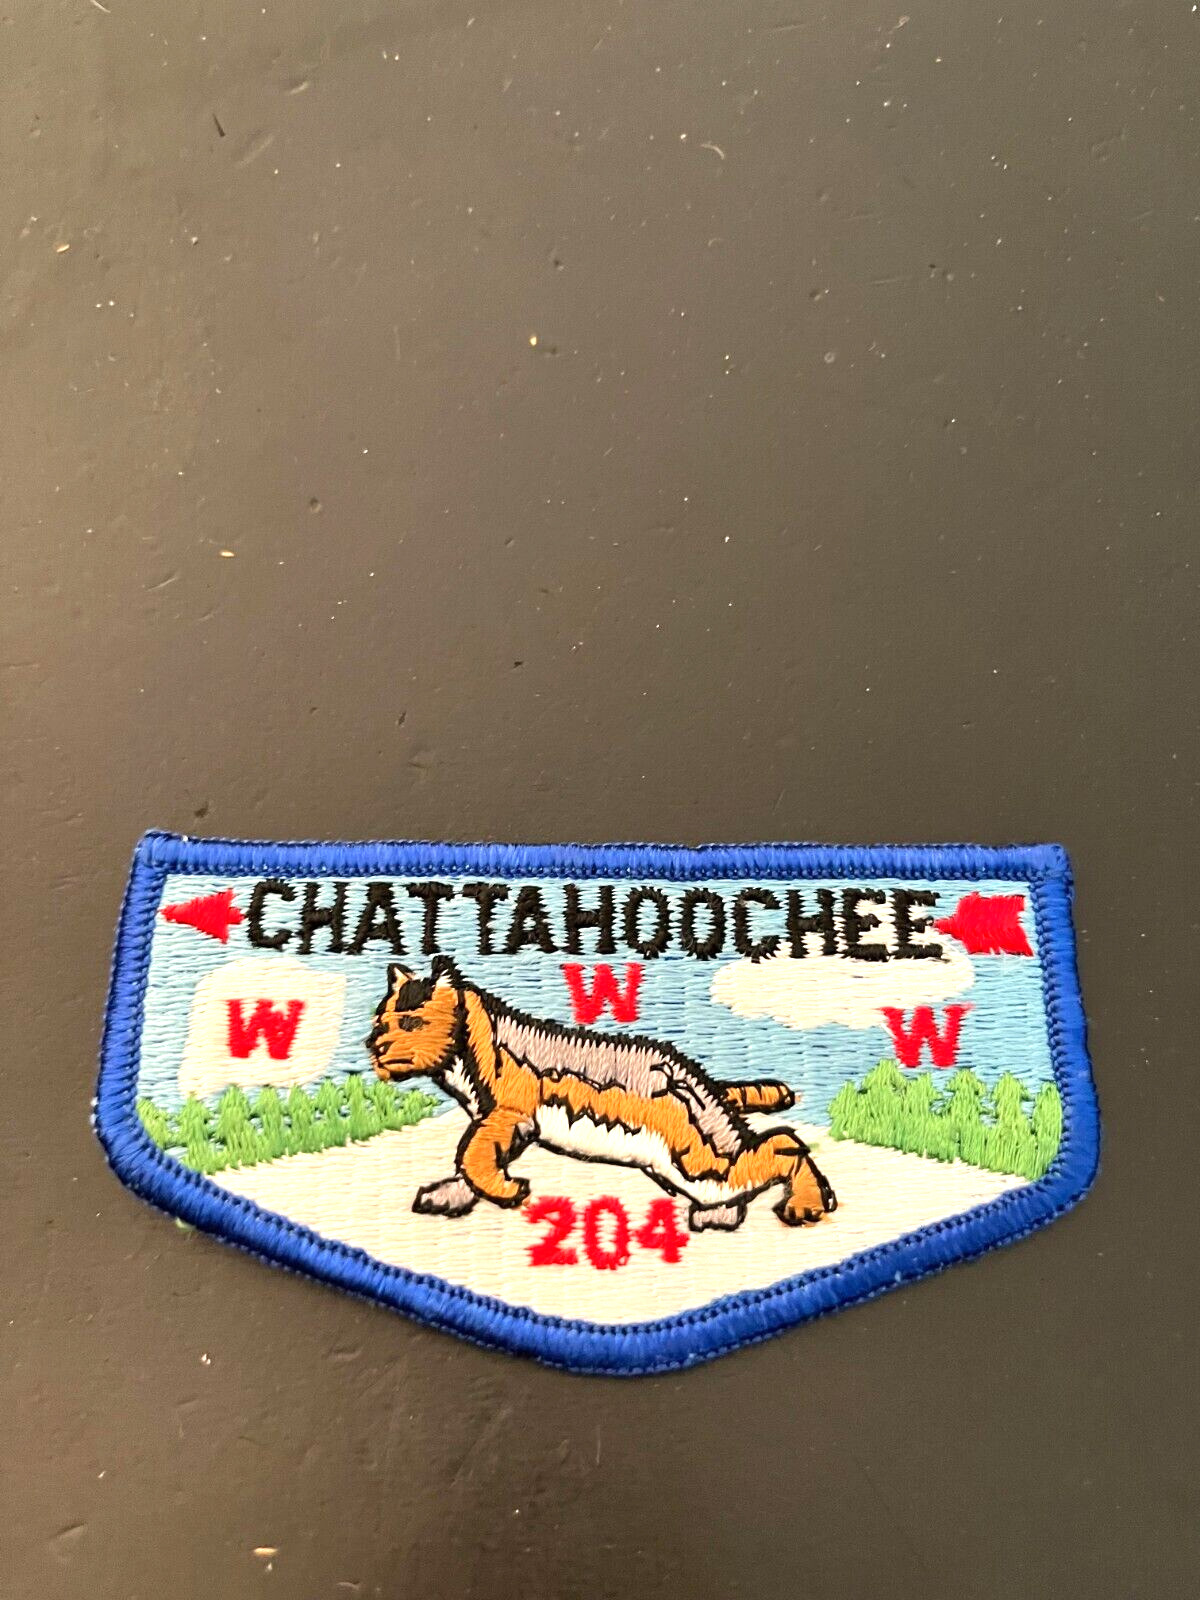 A CHATTAHOOCHEE LODGE 204 S10a FLAP